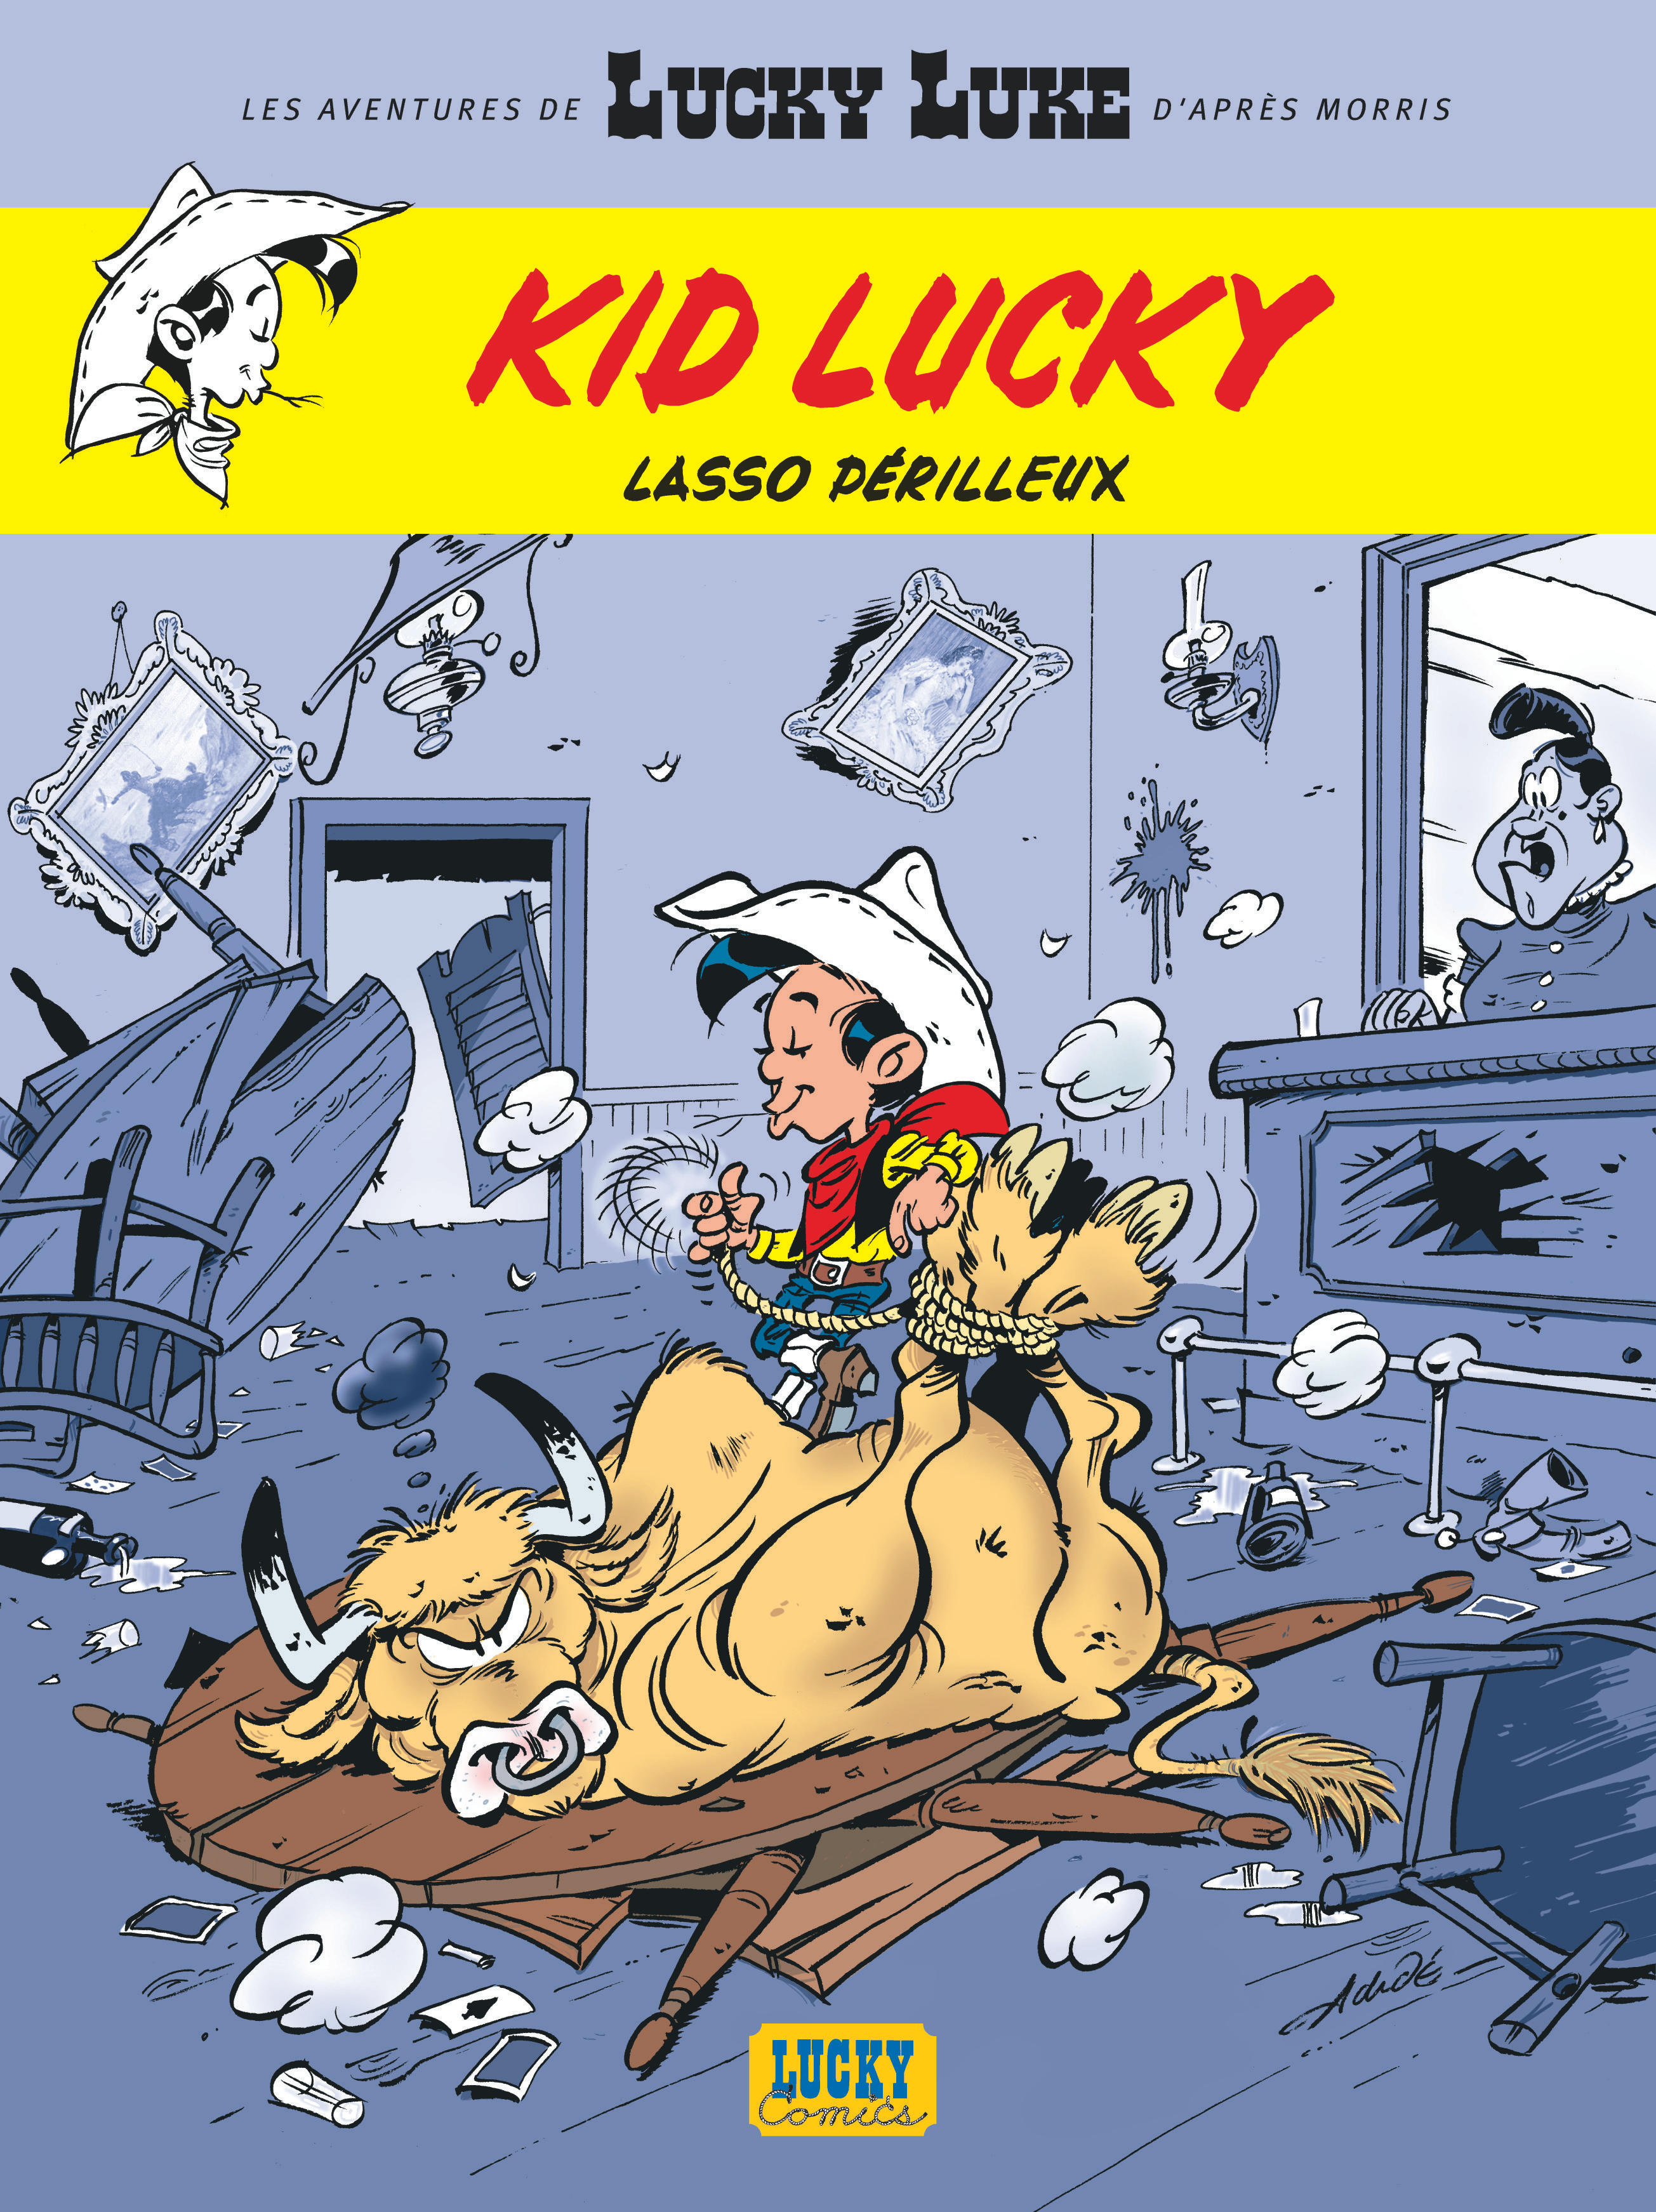 Les Aventures de Kid Lucky d'après Morris – Tome 2 – Lasso périlleux - couv